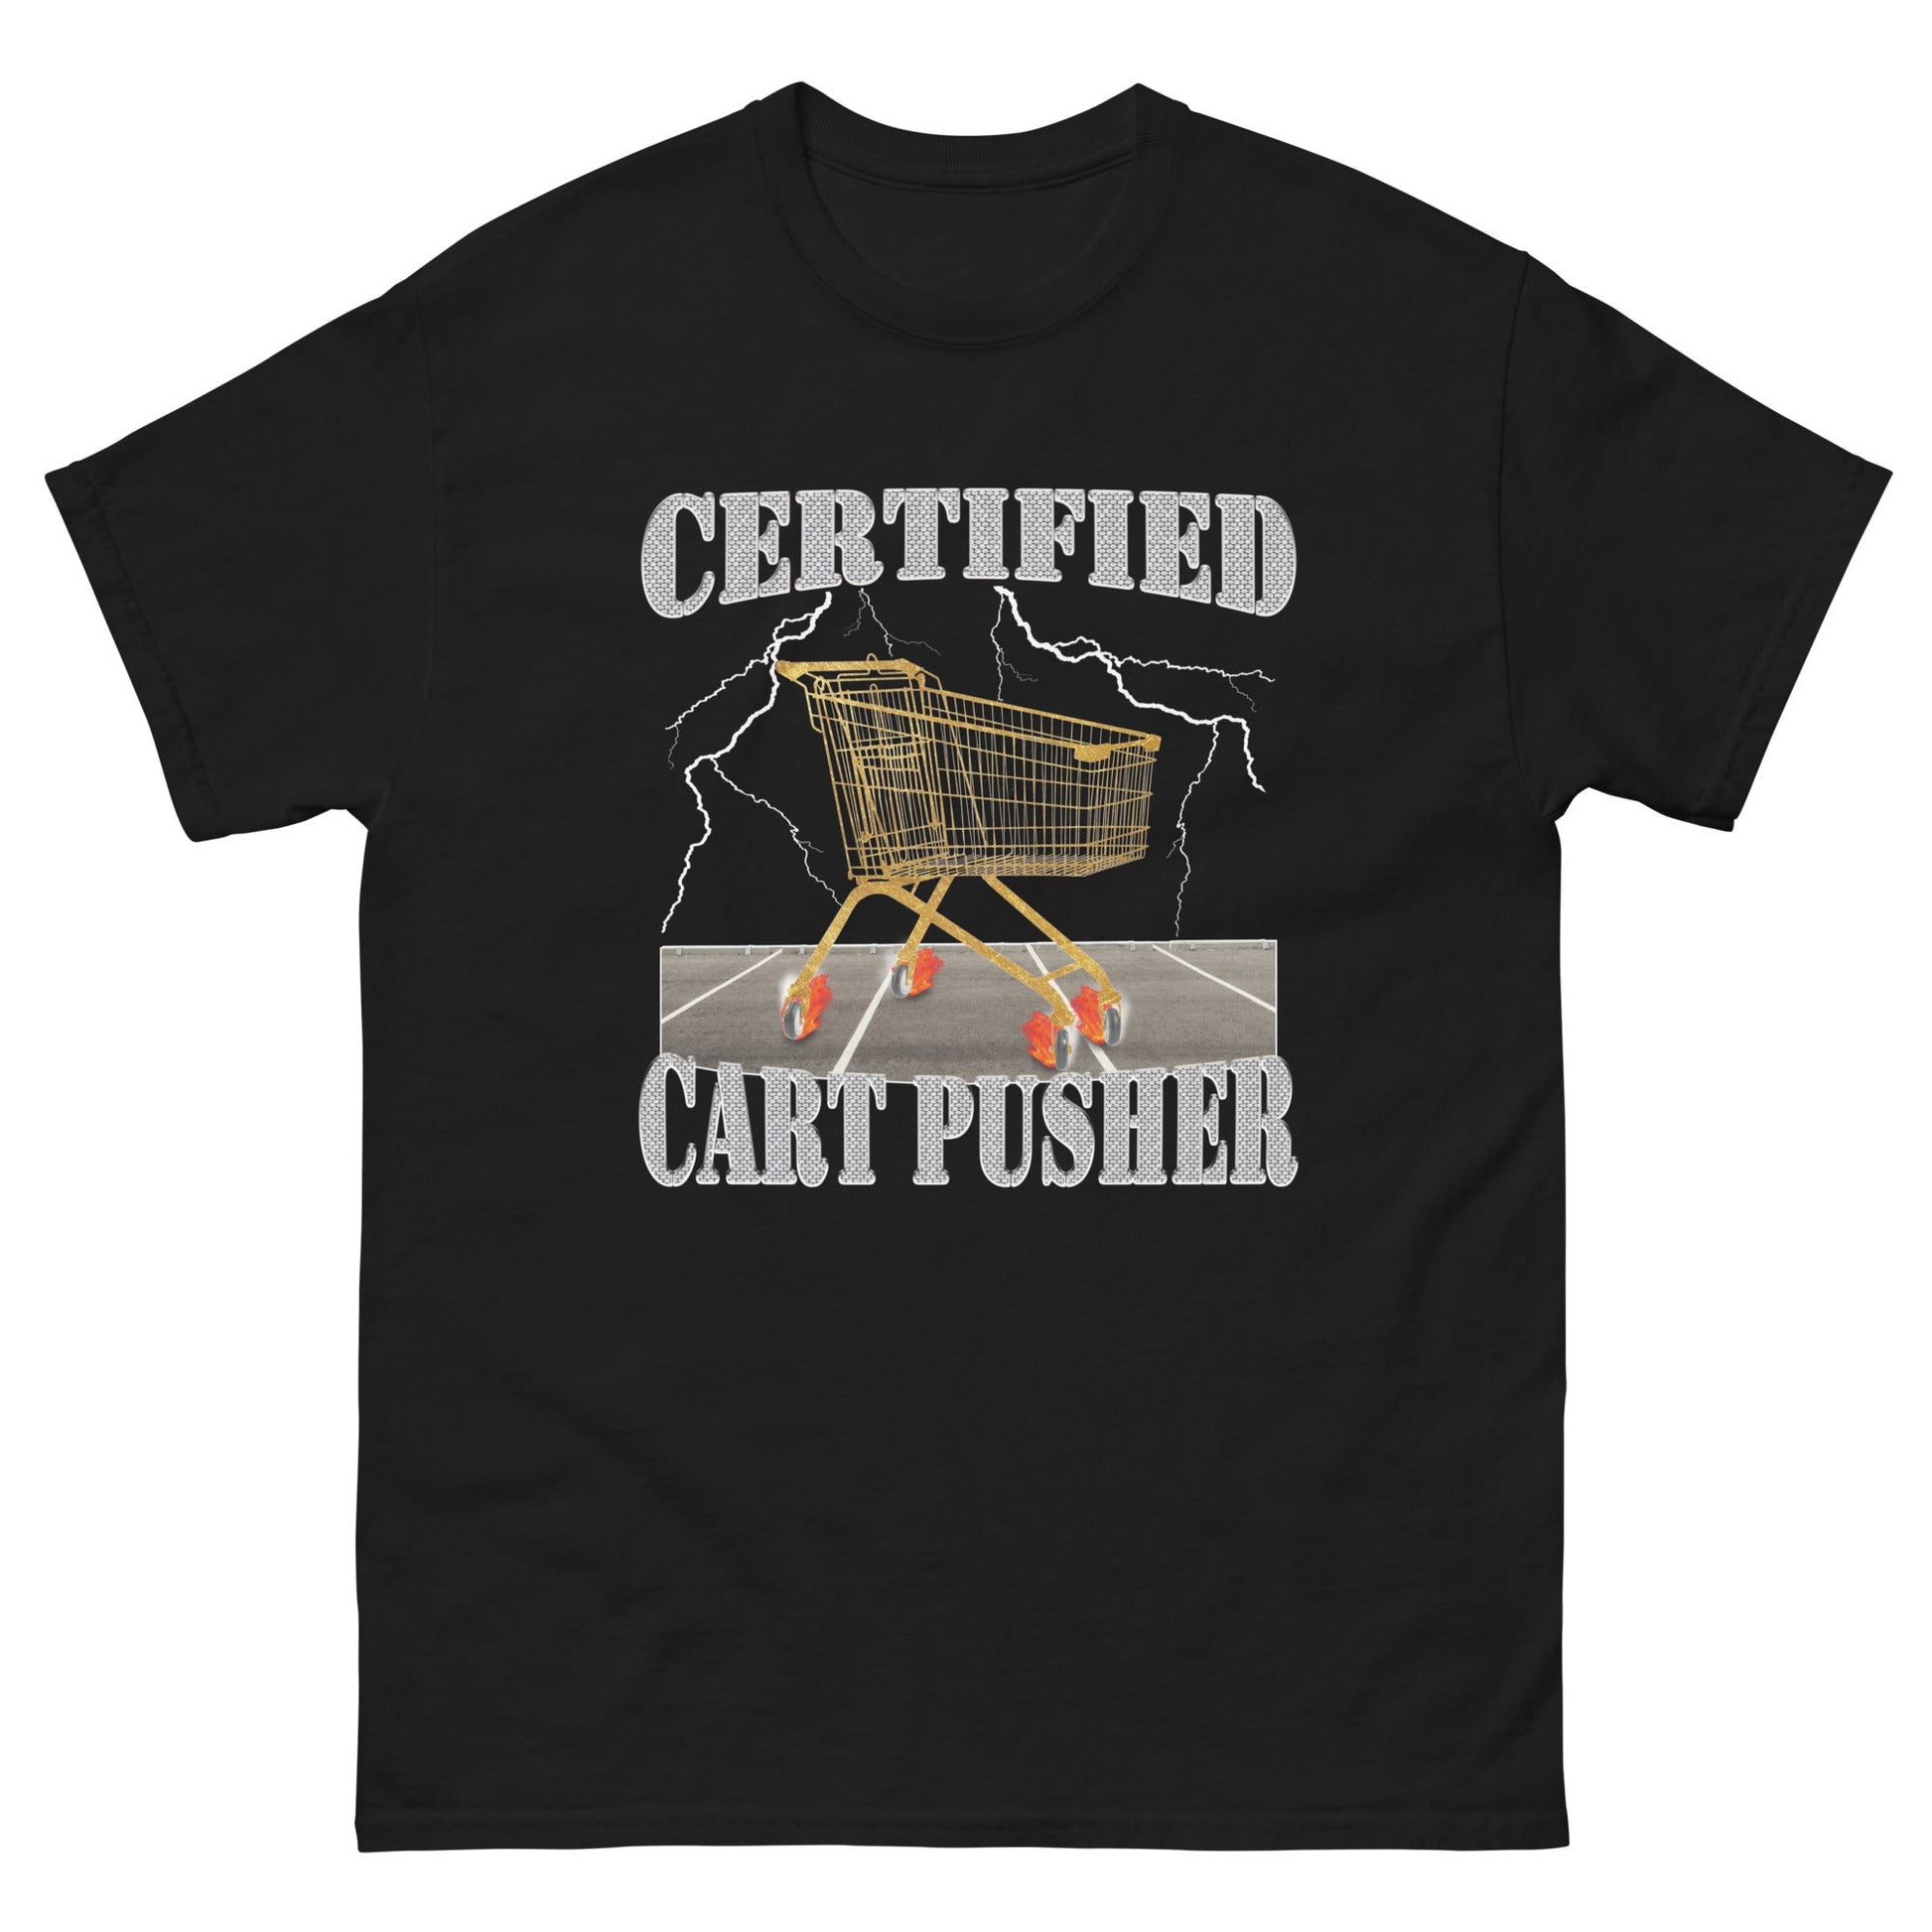 CERTIFIED CART PUSHER - HardShirts